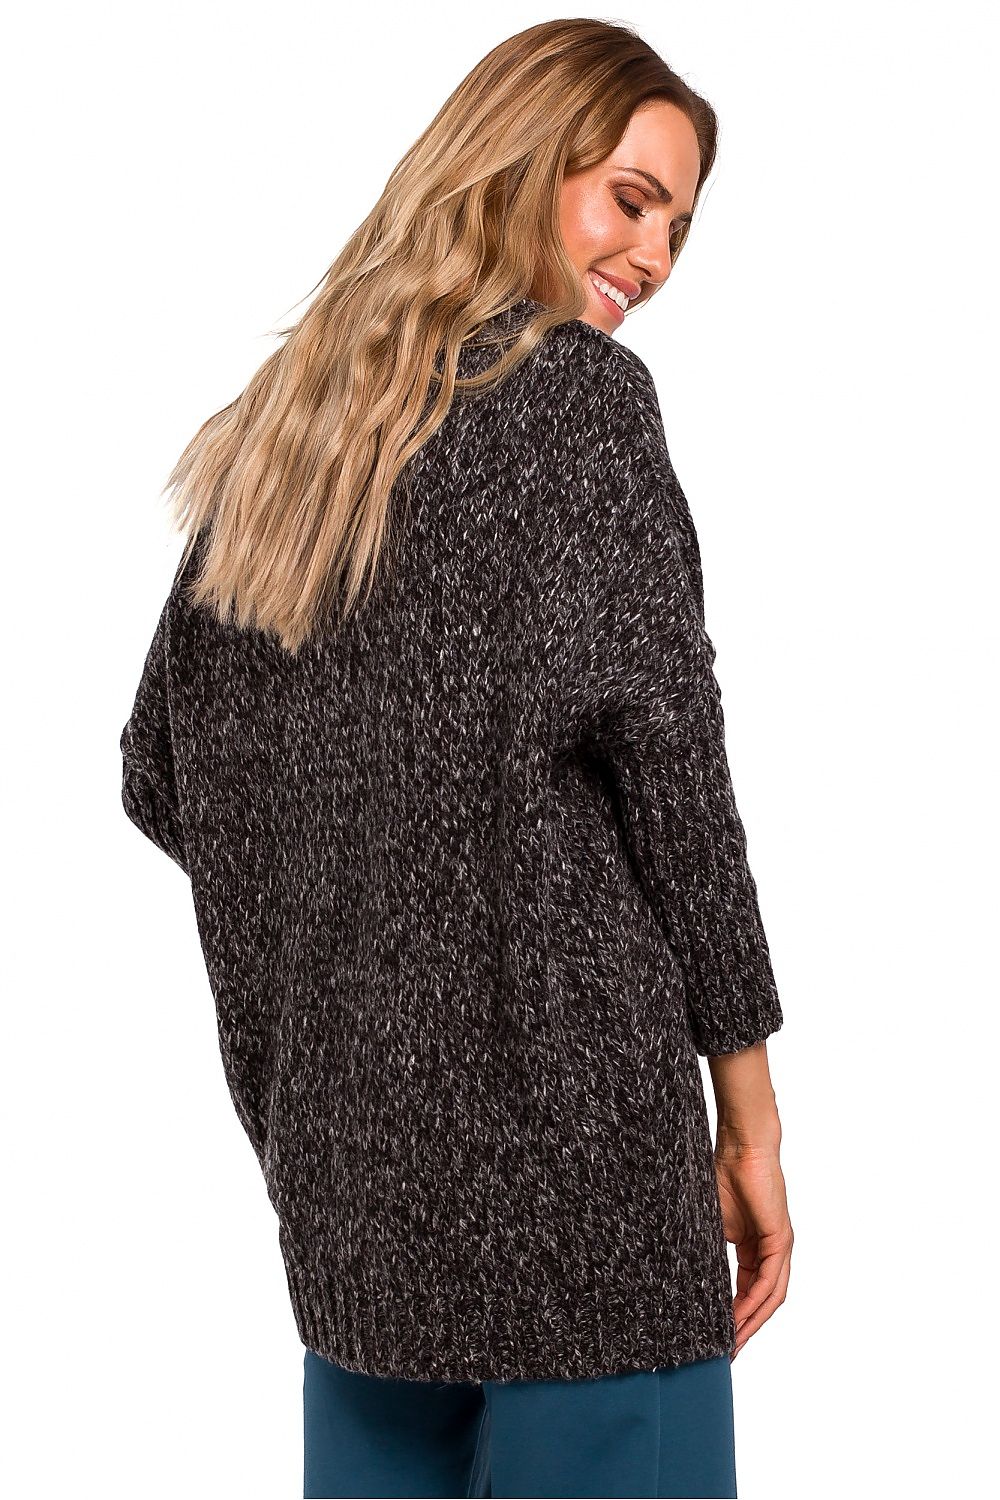 Moe Oversize Sweater Charcoal